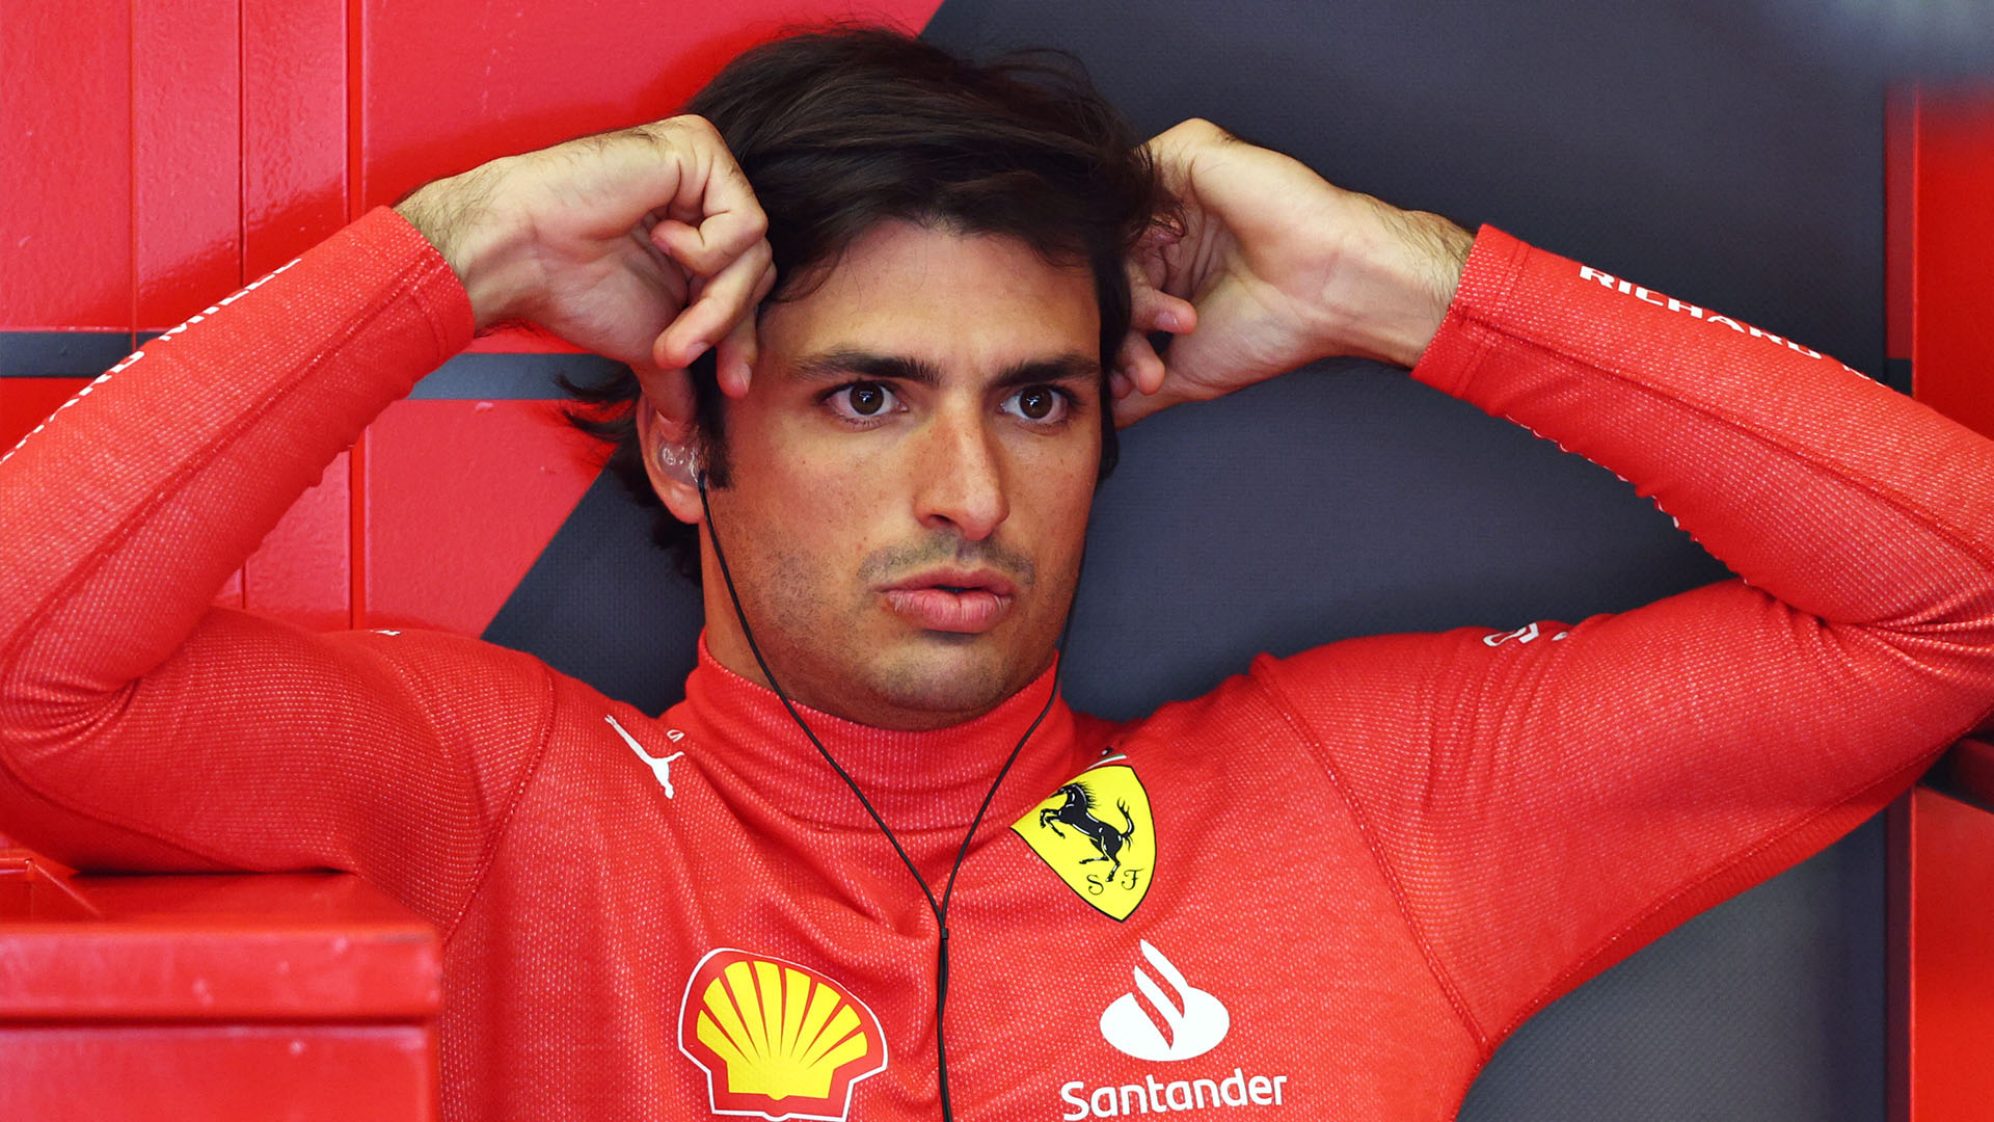 Сайнс назвал Бахрейн своим «самым трудным уик-эндом в качестве гонщика Ferrari», несмотря на подиум